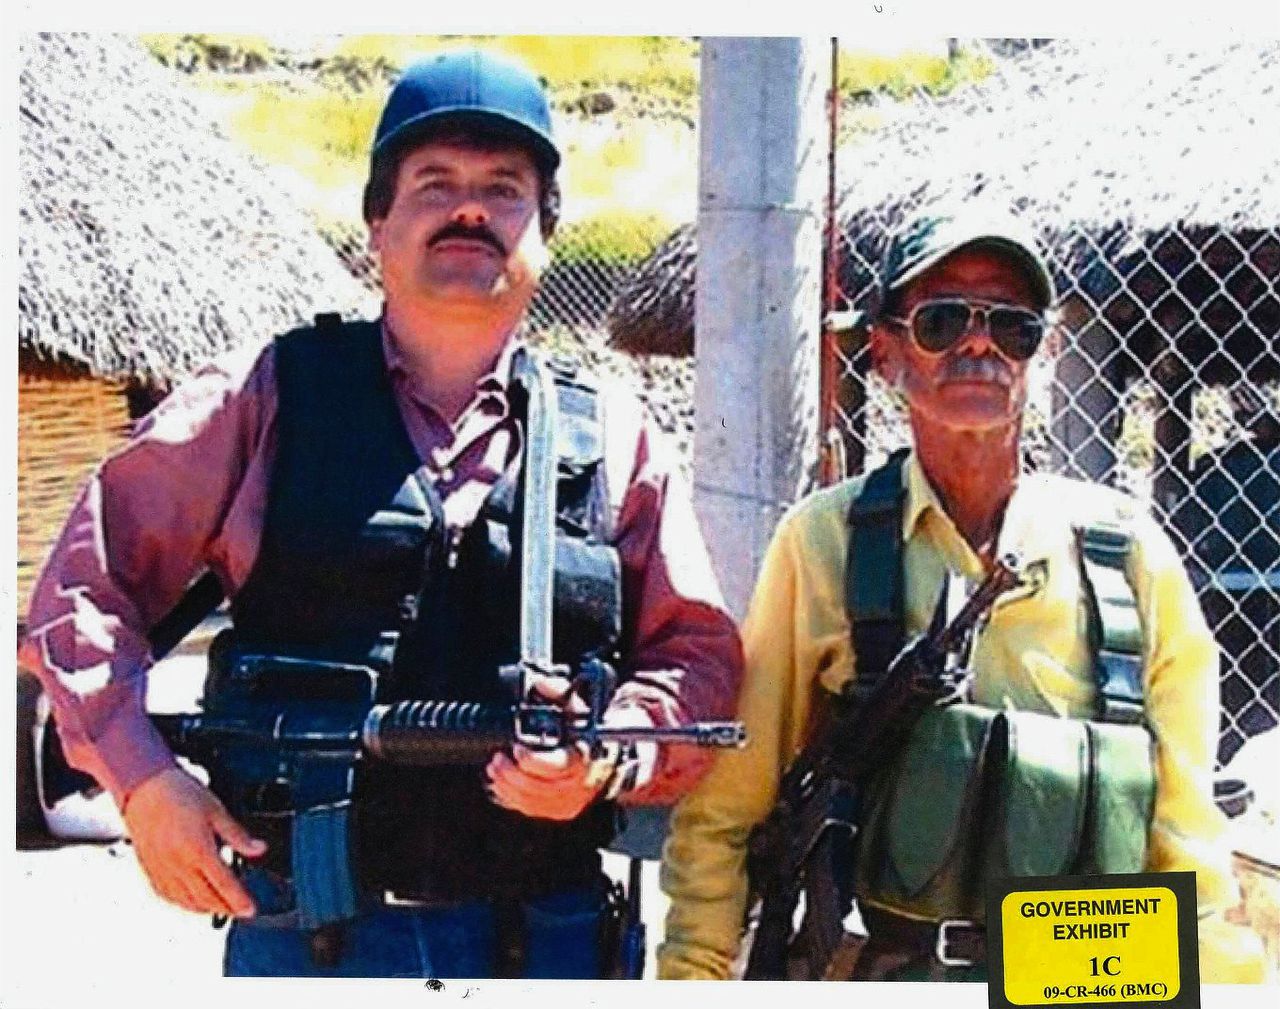 Joaquin Guzman, bijgenaamd El Chapo, poseert links op de foto met een onbekende man. e